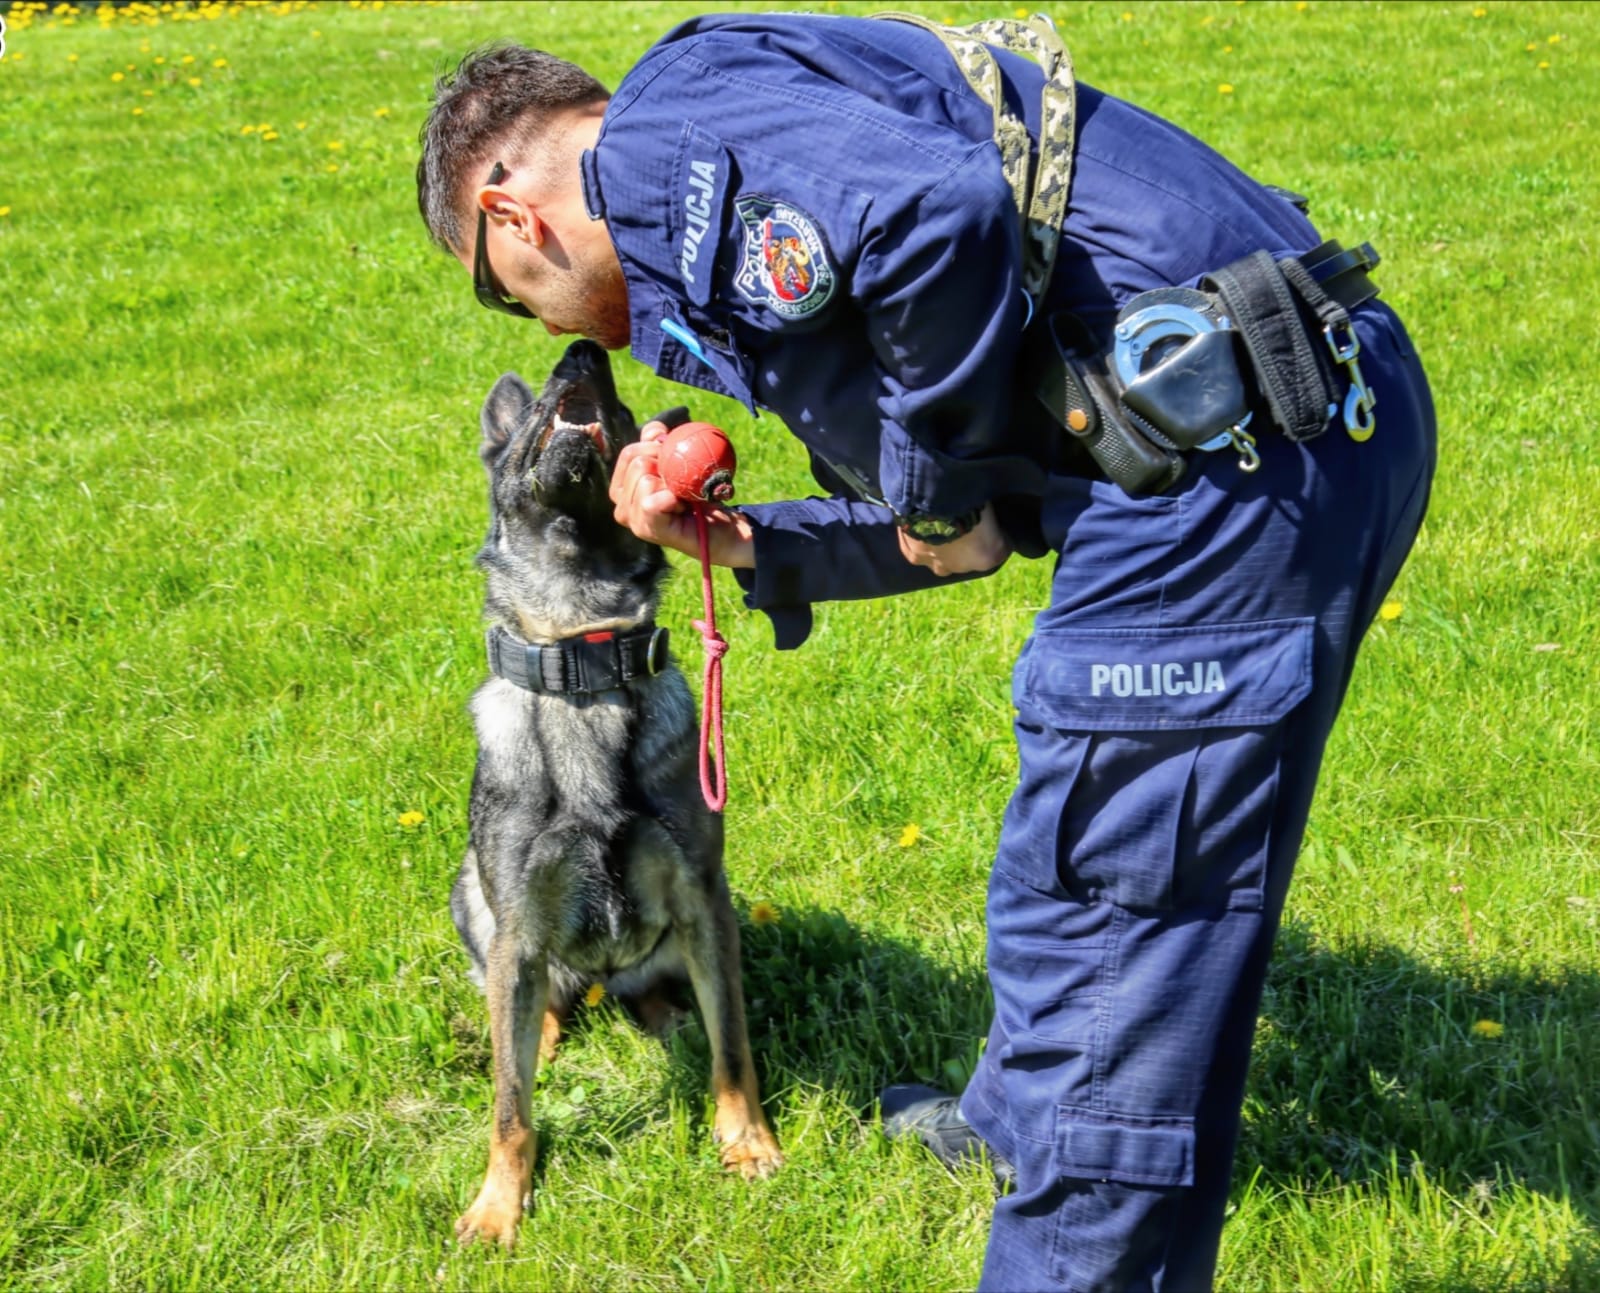 Przewodnik psa służbowego wraz z czworonożnym partnerem. Fot.: Polska Policja